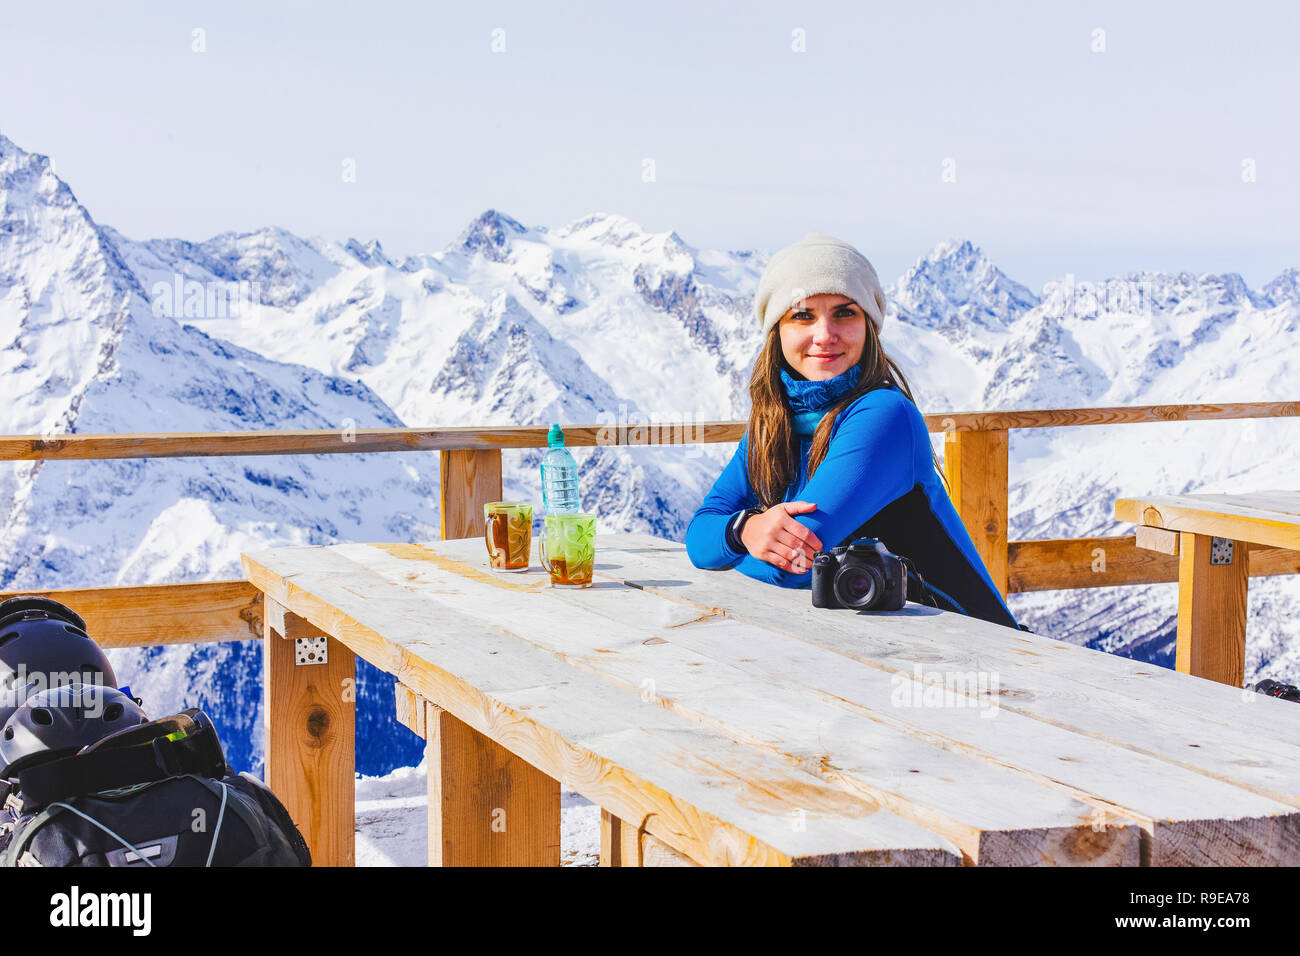 Donna snowboarder rilassante nella rustica terrazza in legno sulla montagna, inverno panorama alpino picchi innevati. Stile di vita viaggio avventura concetto, sport outdoor Foto Stock